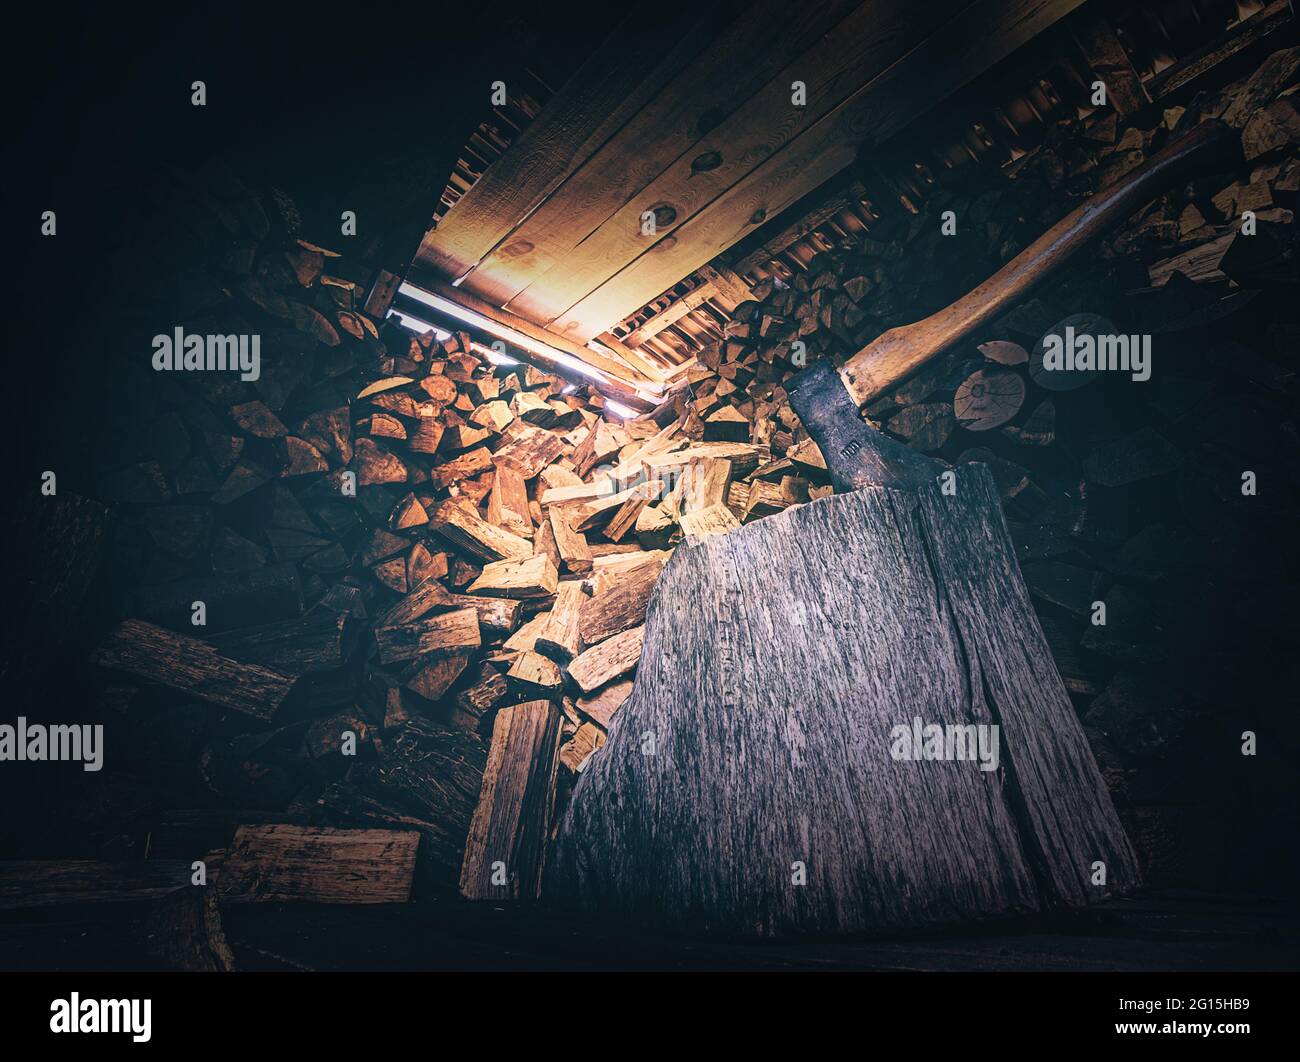 Holzschuppen mit bedrohlich wirkender Axt und großem Holzblock mit viel gestaltetem Feuerholz im Hintergrund. Lichteinfall im Holzschuppen Nahaufnahme Stockfoto